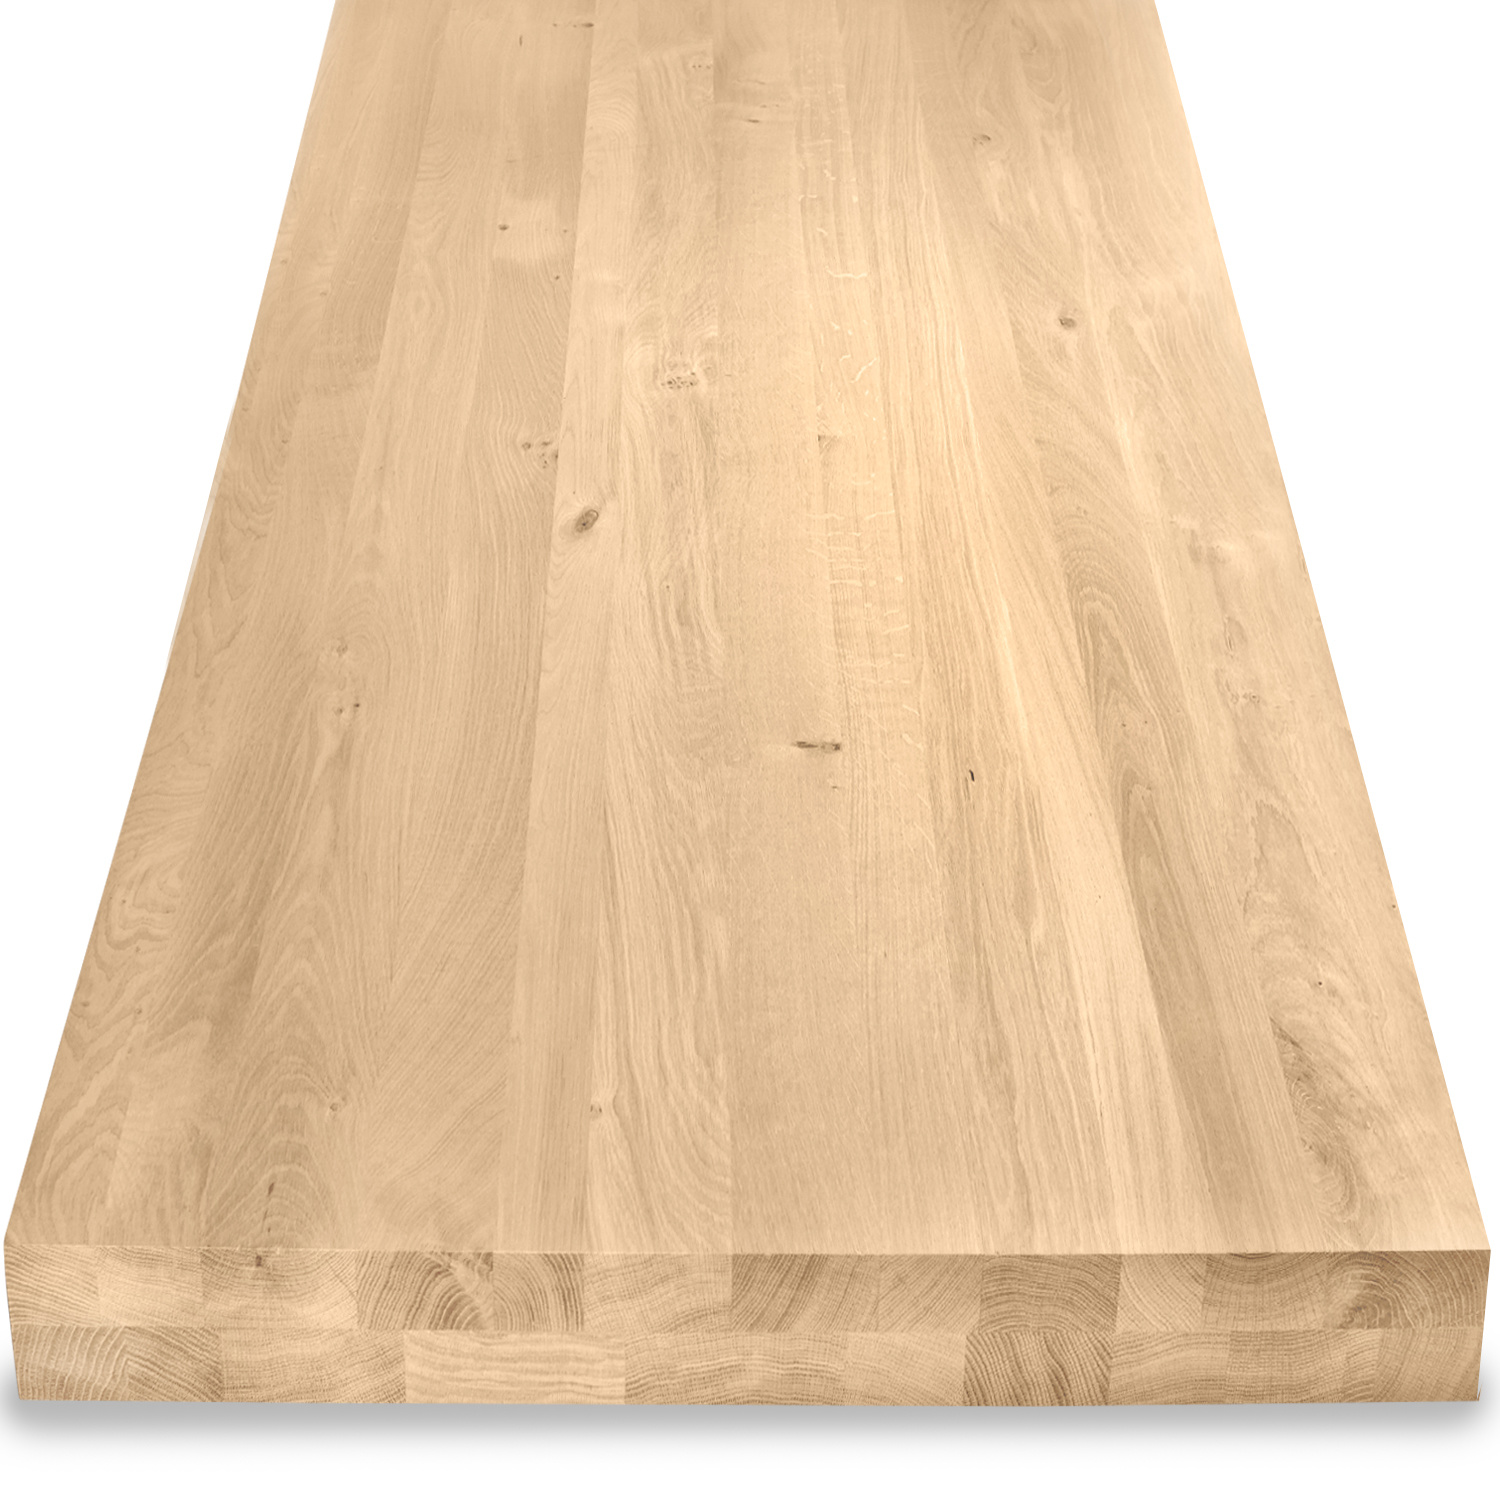  Eiken tafelblad op maat - OPGEDIKT - 8 cm dik (2-laags rondom) - rustiek Europees eikenhout - verlijmd kd 8-12% - 50-120x50-350 cm